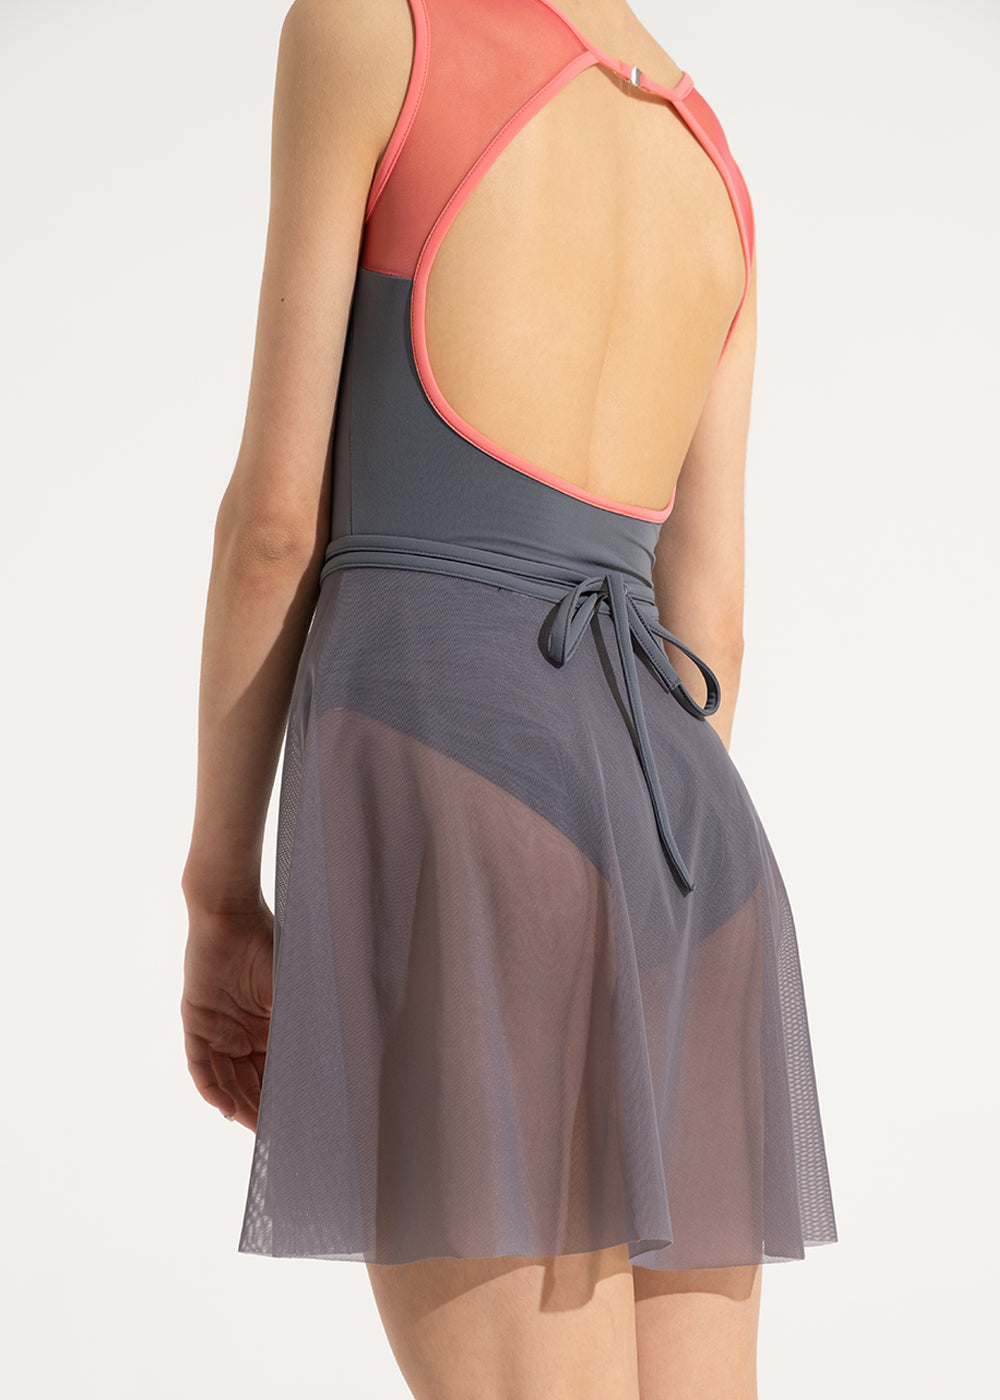 グリシコ バウンドレス コレクション ピア メッシュスカート 【大人】全5色 Grishko Boundless Collection PIA Mesh skirt